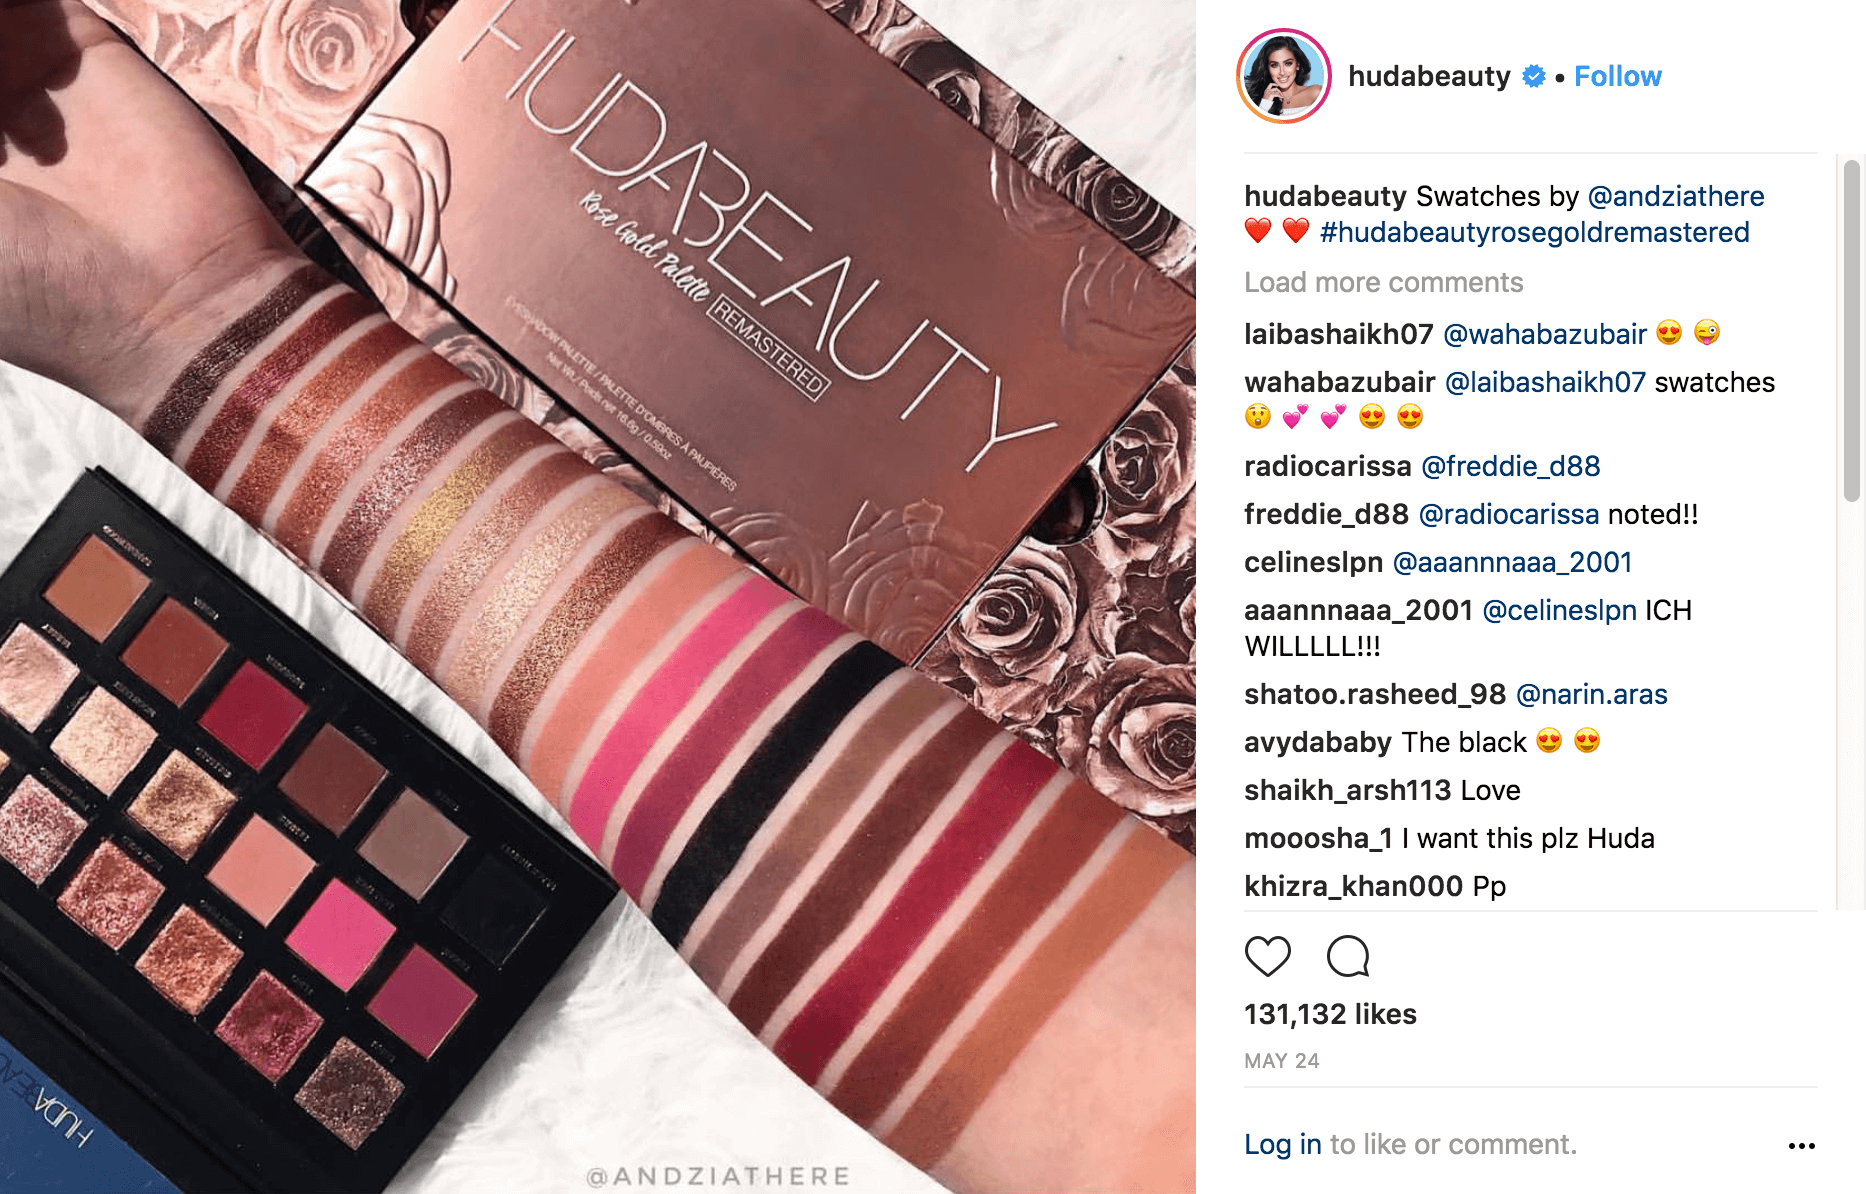 Uma publicação feita pela conta do Instagram hudabeauty mostrando uma amostra de maquiagem.